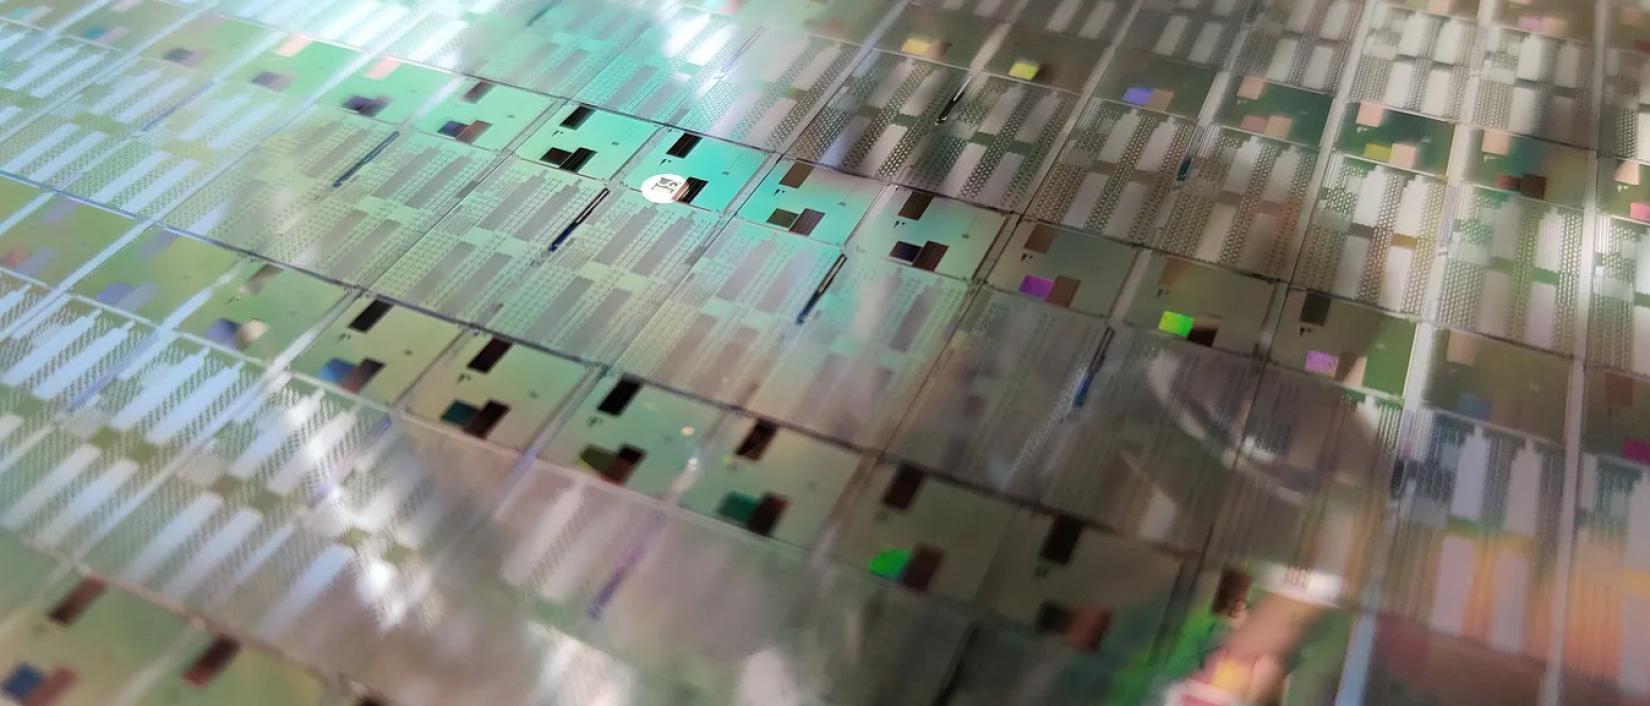 Universal Quantum-led consortium wins £7.5m grant to build an error-corrected quantum computer